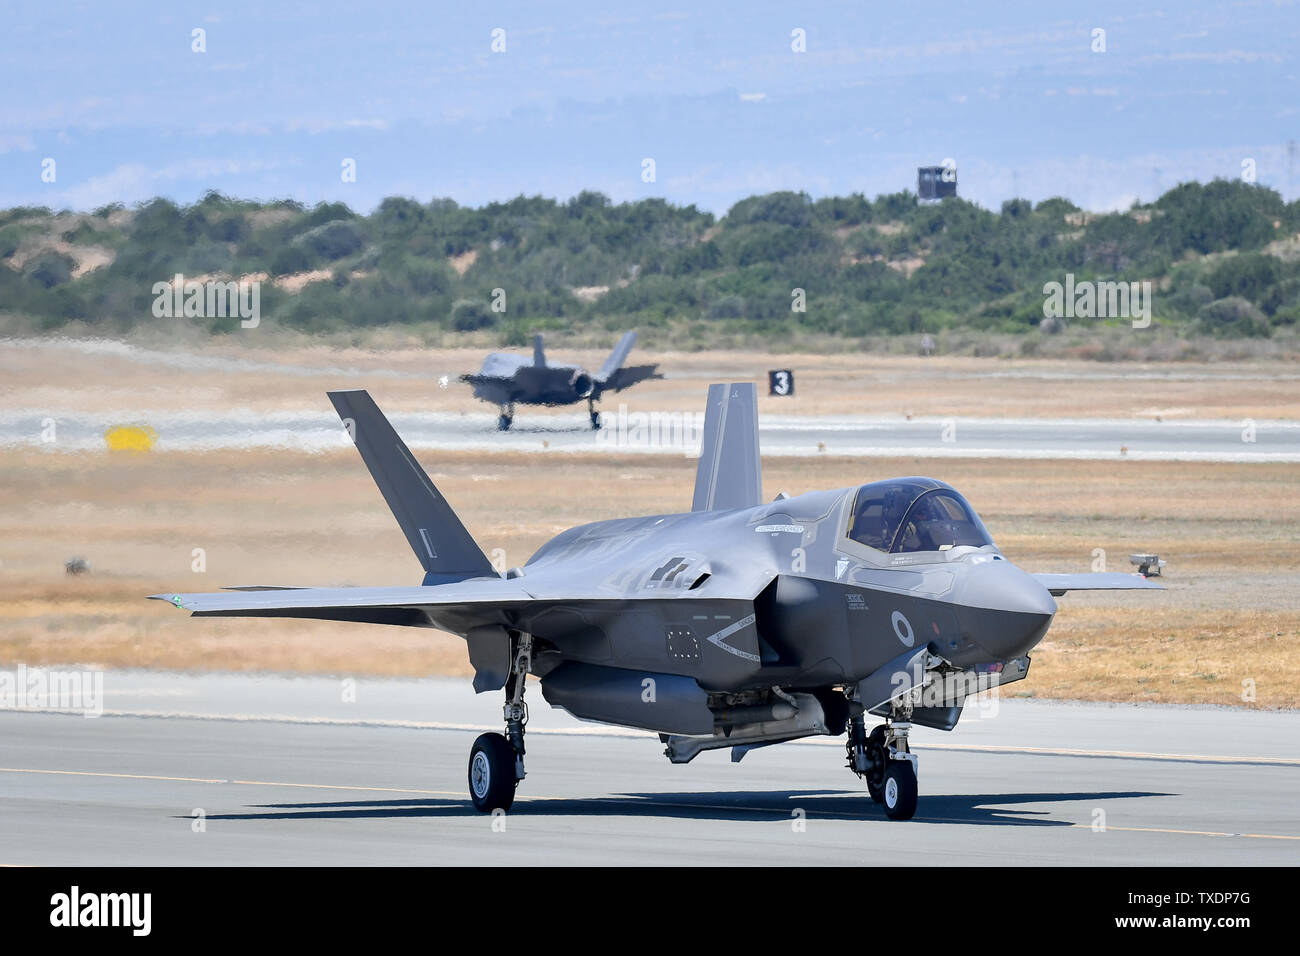 Eine F-35 zurück an RAF Akrotiri Ankunft in Zypern, wo Verteidigungsminister Penny Mordaunt angekündigt, dass die Flugzeuge auf Operationelle Dienstreisen zum ersten Mal geflogen sind, da sie Bemühungen, islamischen Staat zu beseitigen. Stockfoto